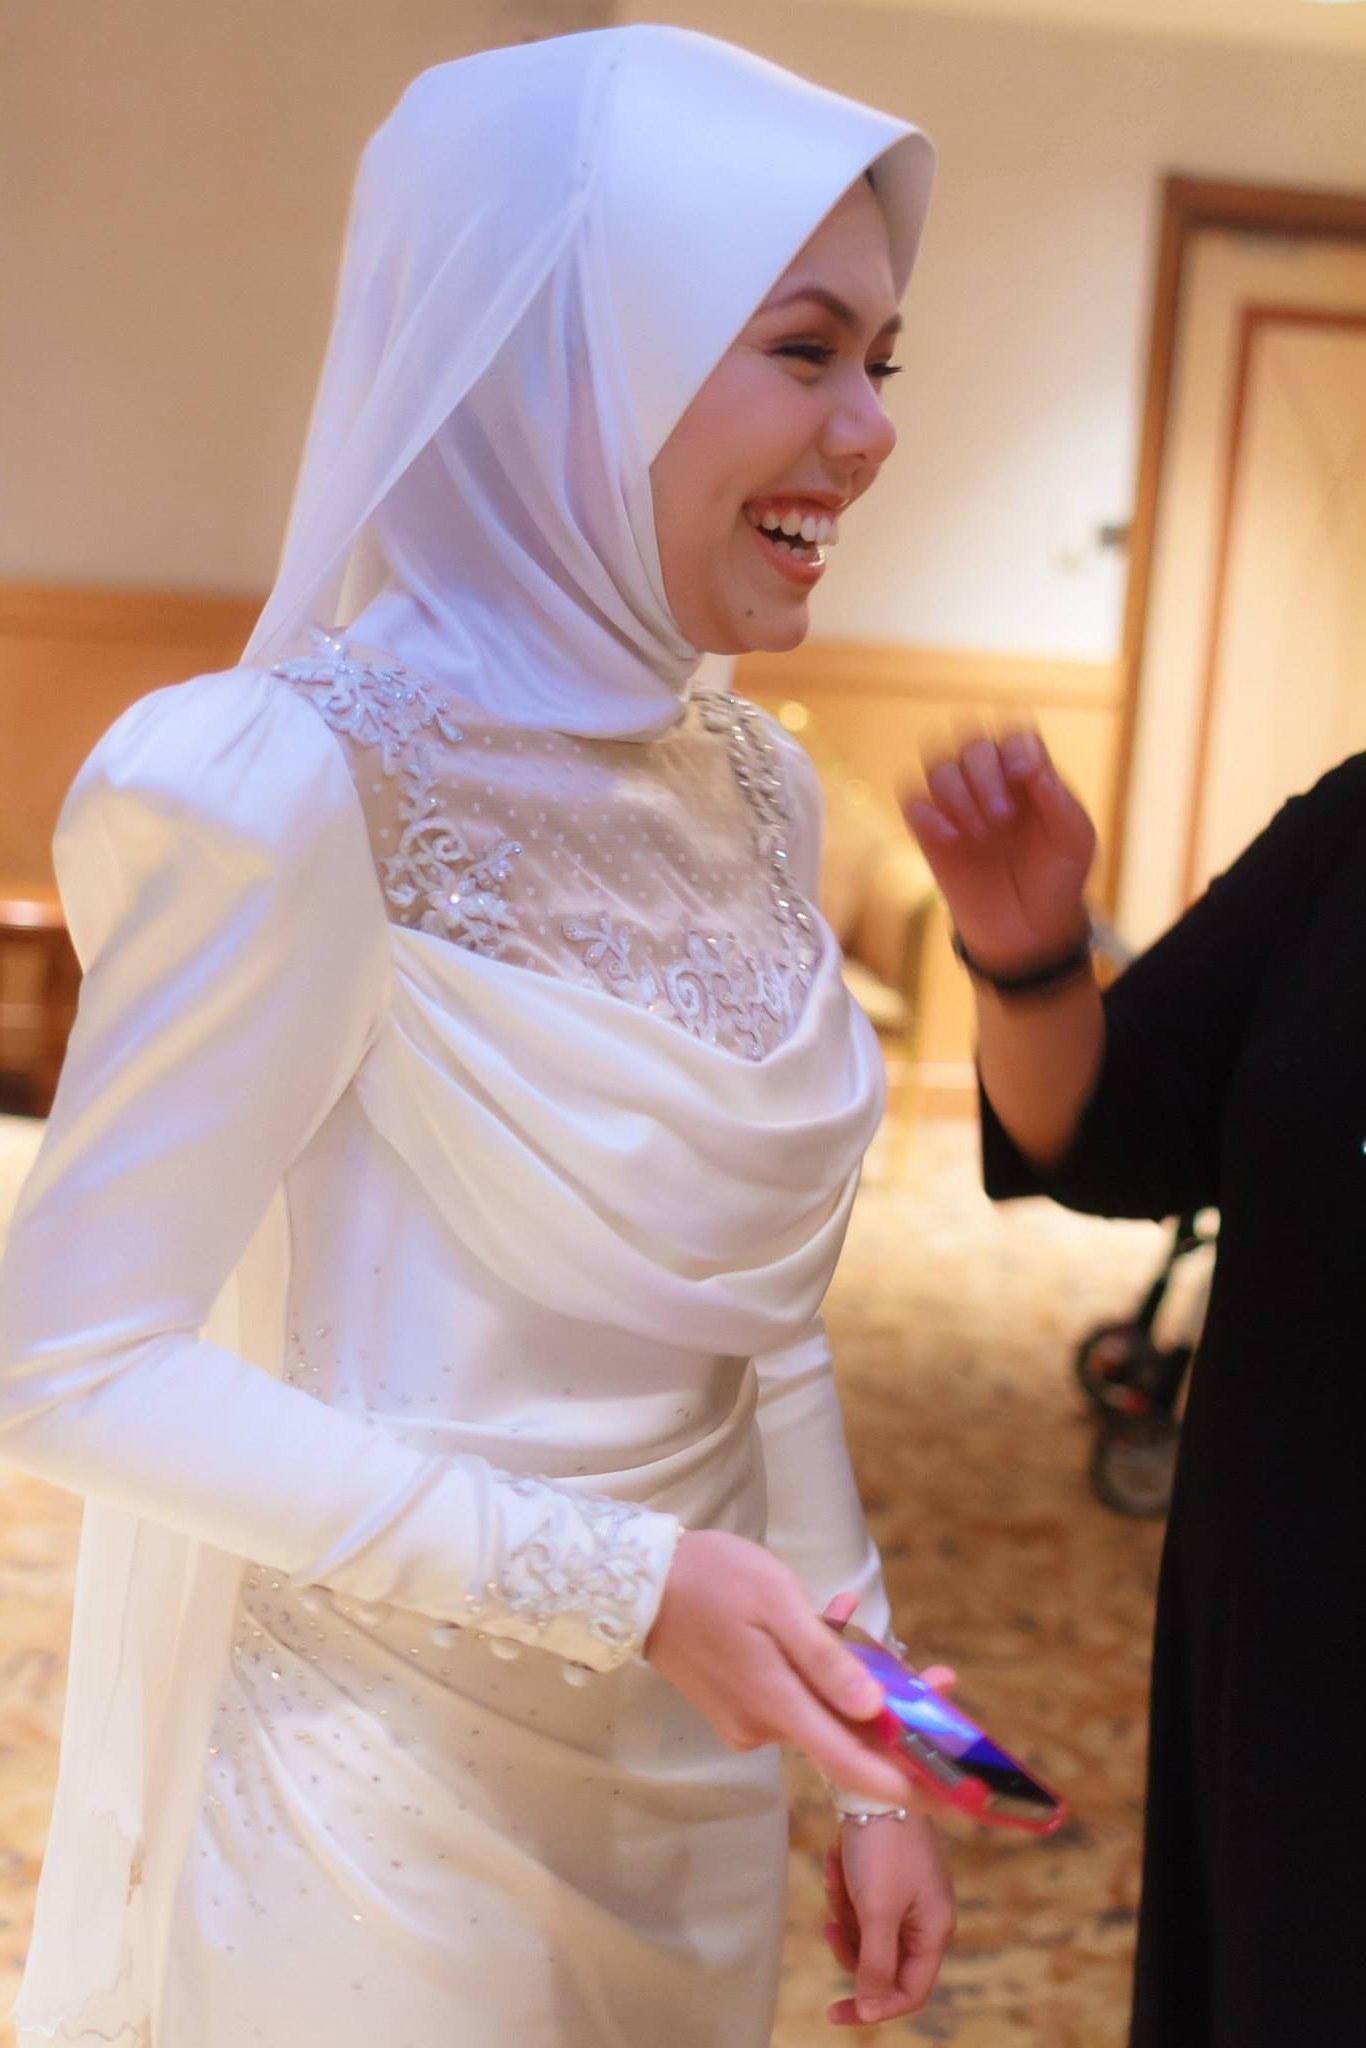 Ide Design Baju Pengantin Muslimah Whdr Baju Pengantin Moden Baju Pengantin songket by Melinda